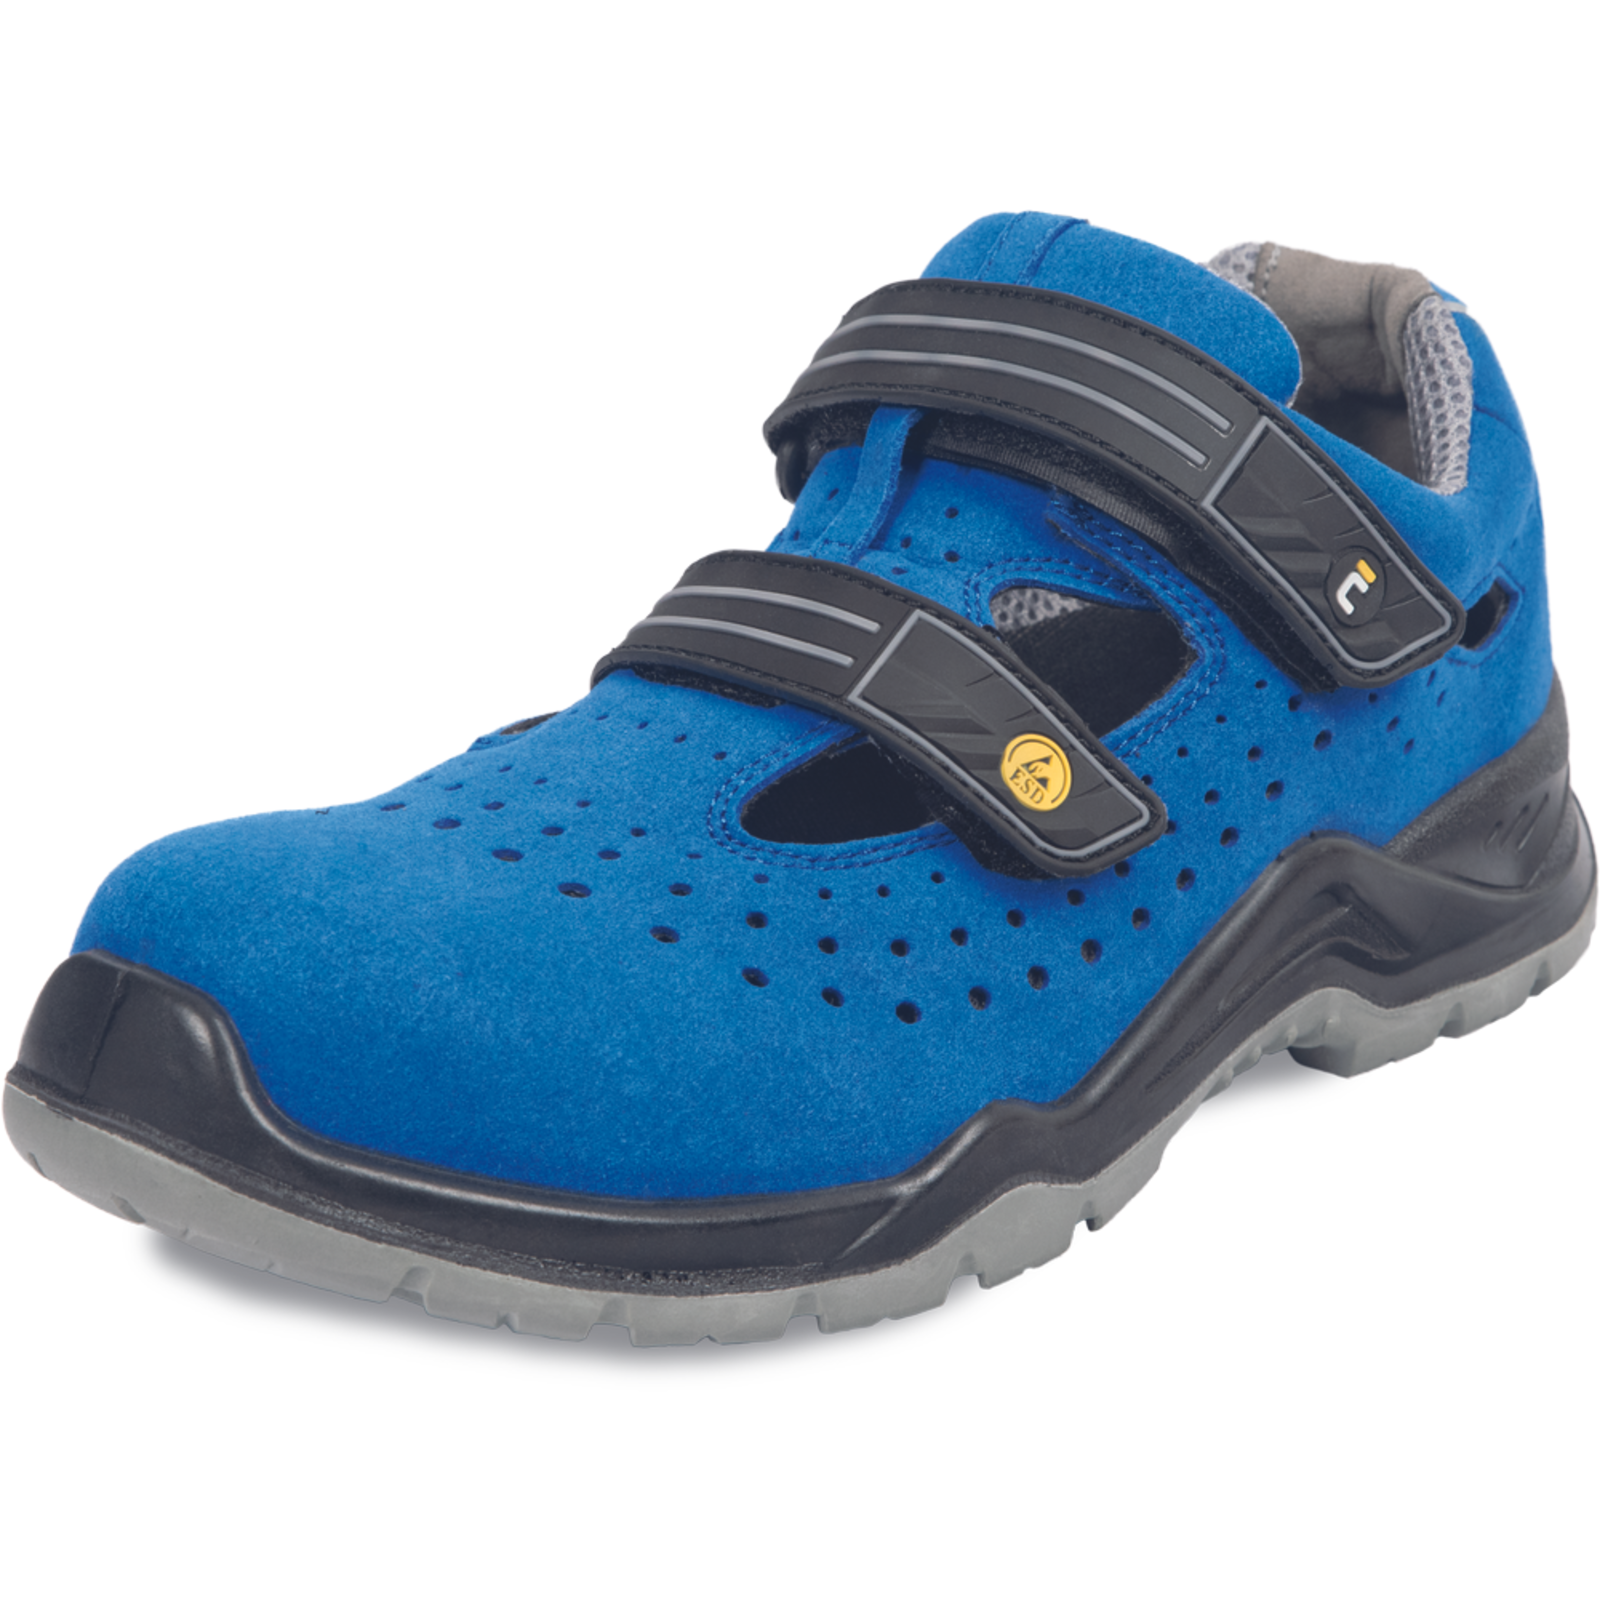 Bezpečnostné pracovné sandále Cerva Hagewill S1P - veľkosť: 39, farba: modrá